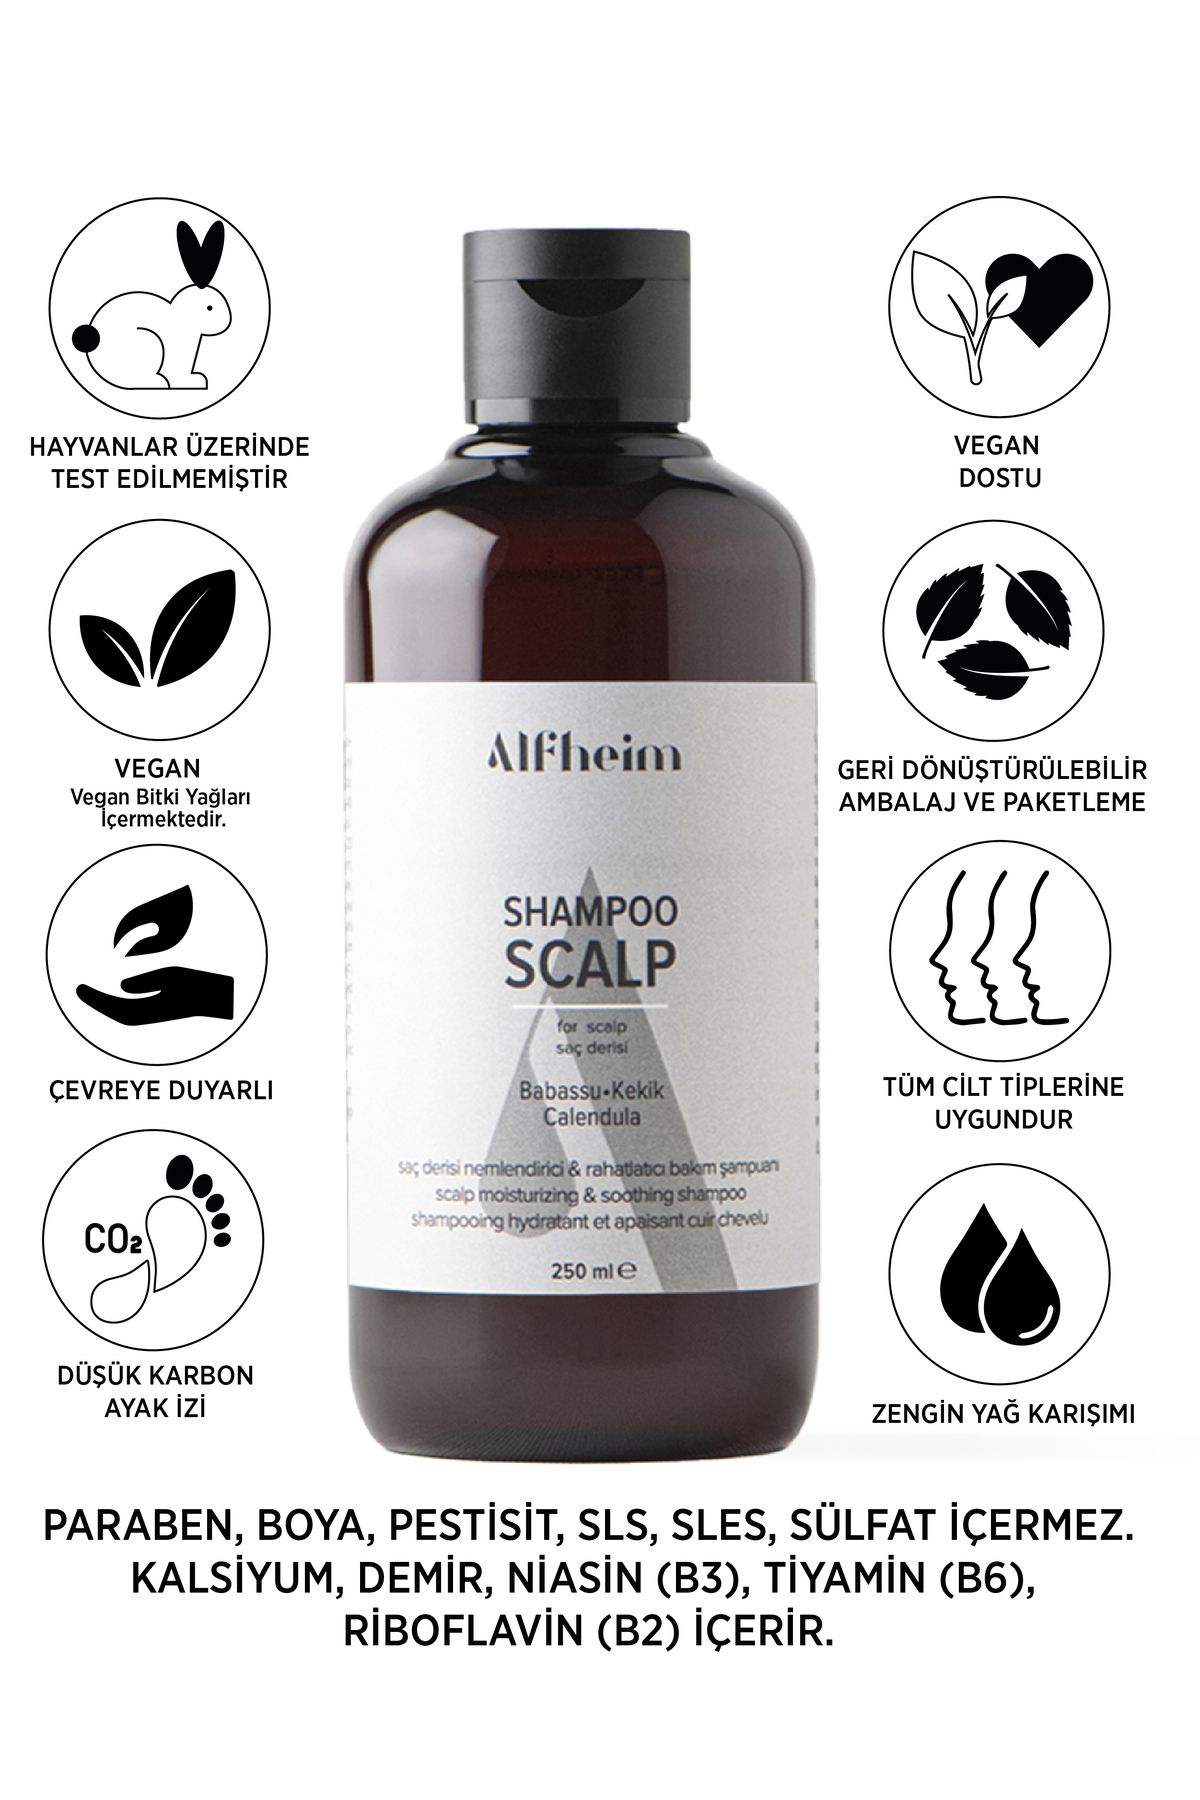 Alfheim Shampoo Scalp/ Kuruluk Ve Kaşıntı/ Mantar Ve Önleyici/ Saç Derisi Sorunları Için/ 250 ml